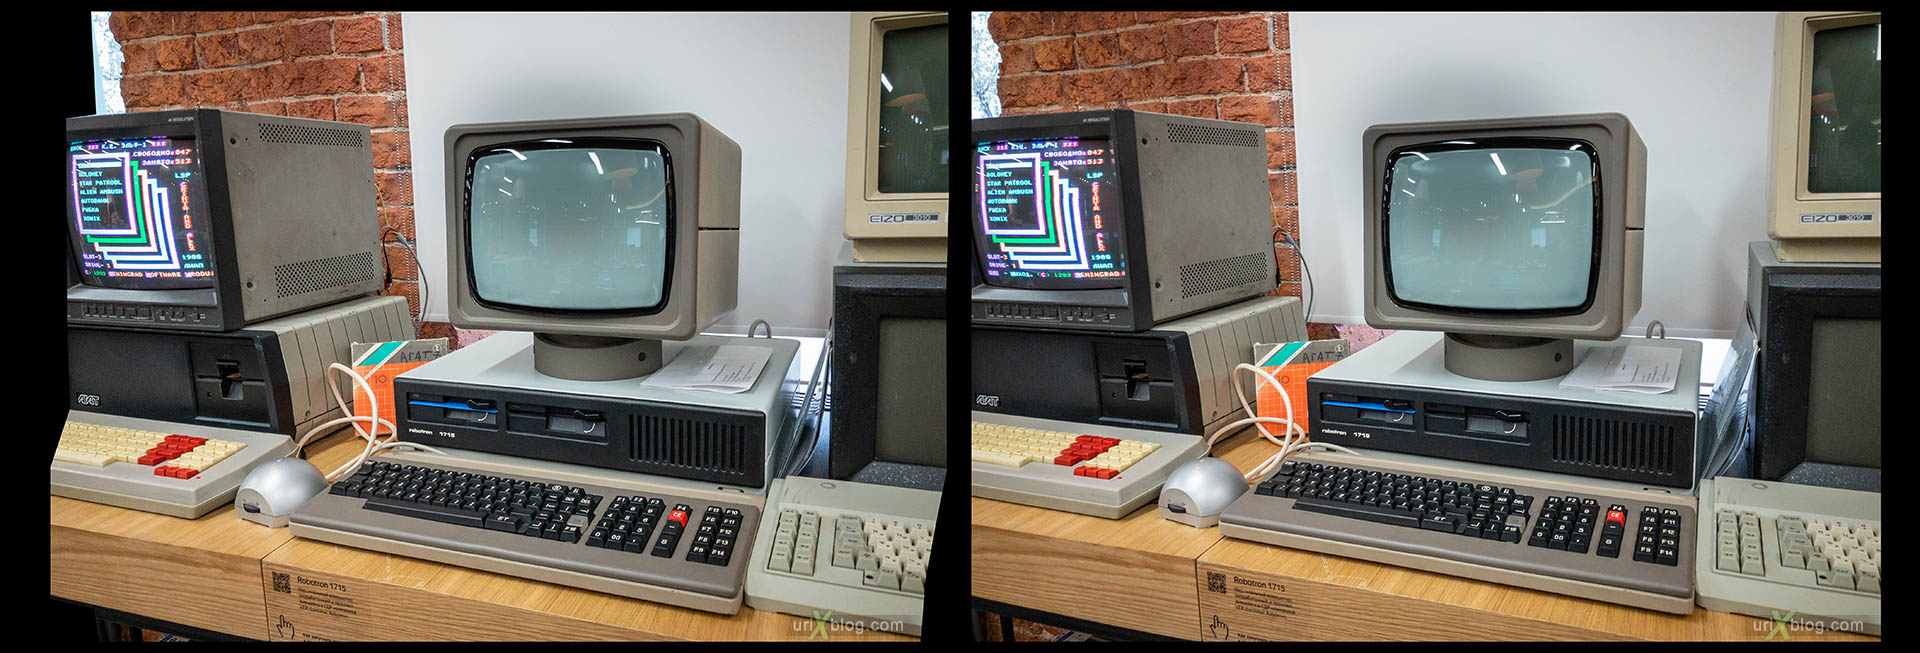 Магазин и музей Яндекса, старые компьютеры, советские компьютеры, ЭВМ, Москва, Россия, 3D, перекрёстная стереопара, стерео, стереопара